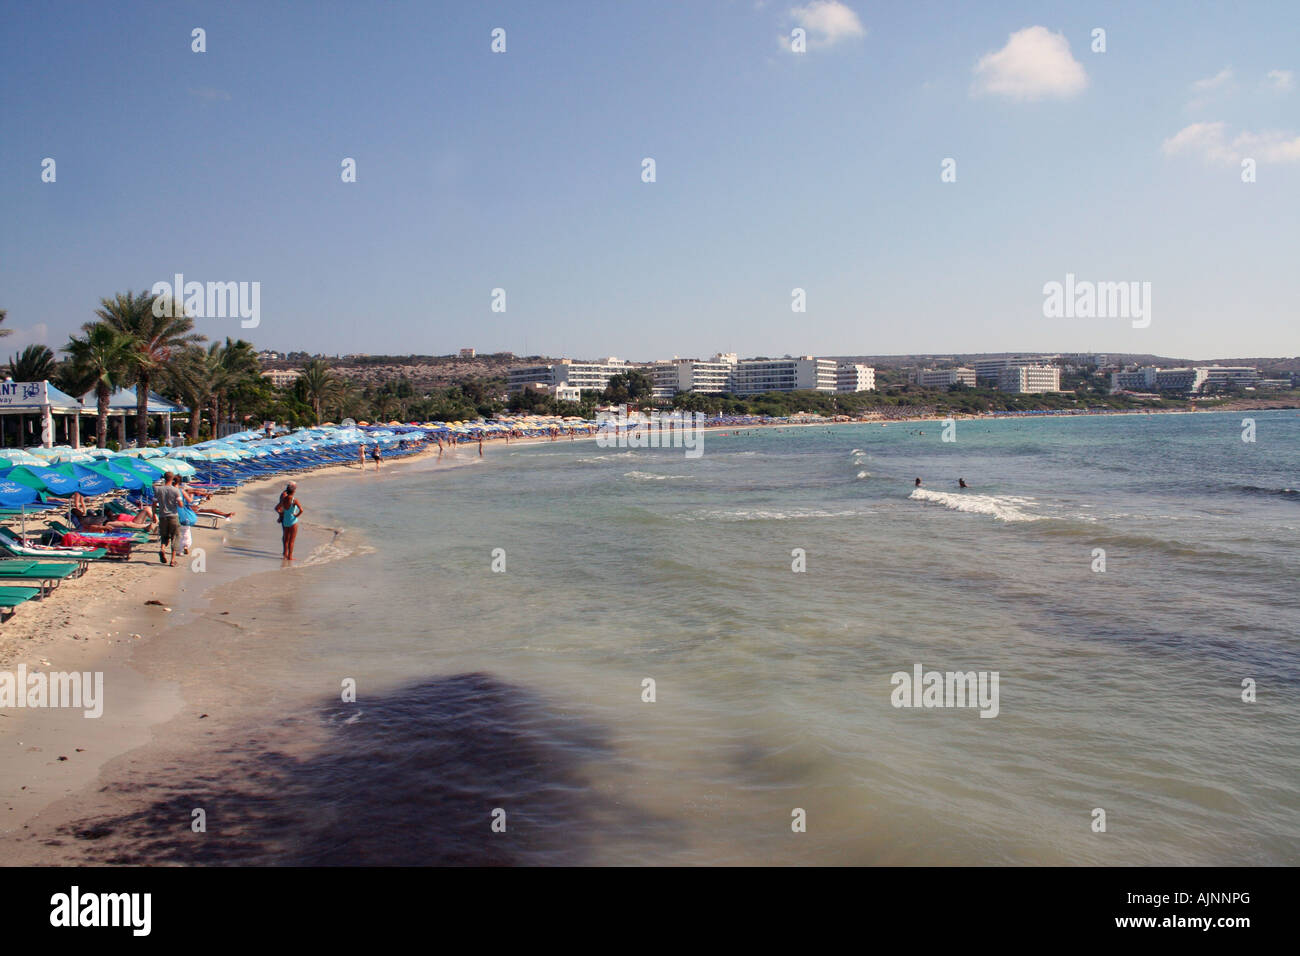 Una vista generale del complesso di Ayia Napa sull'isola di Cipro Foto Stock